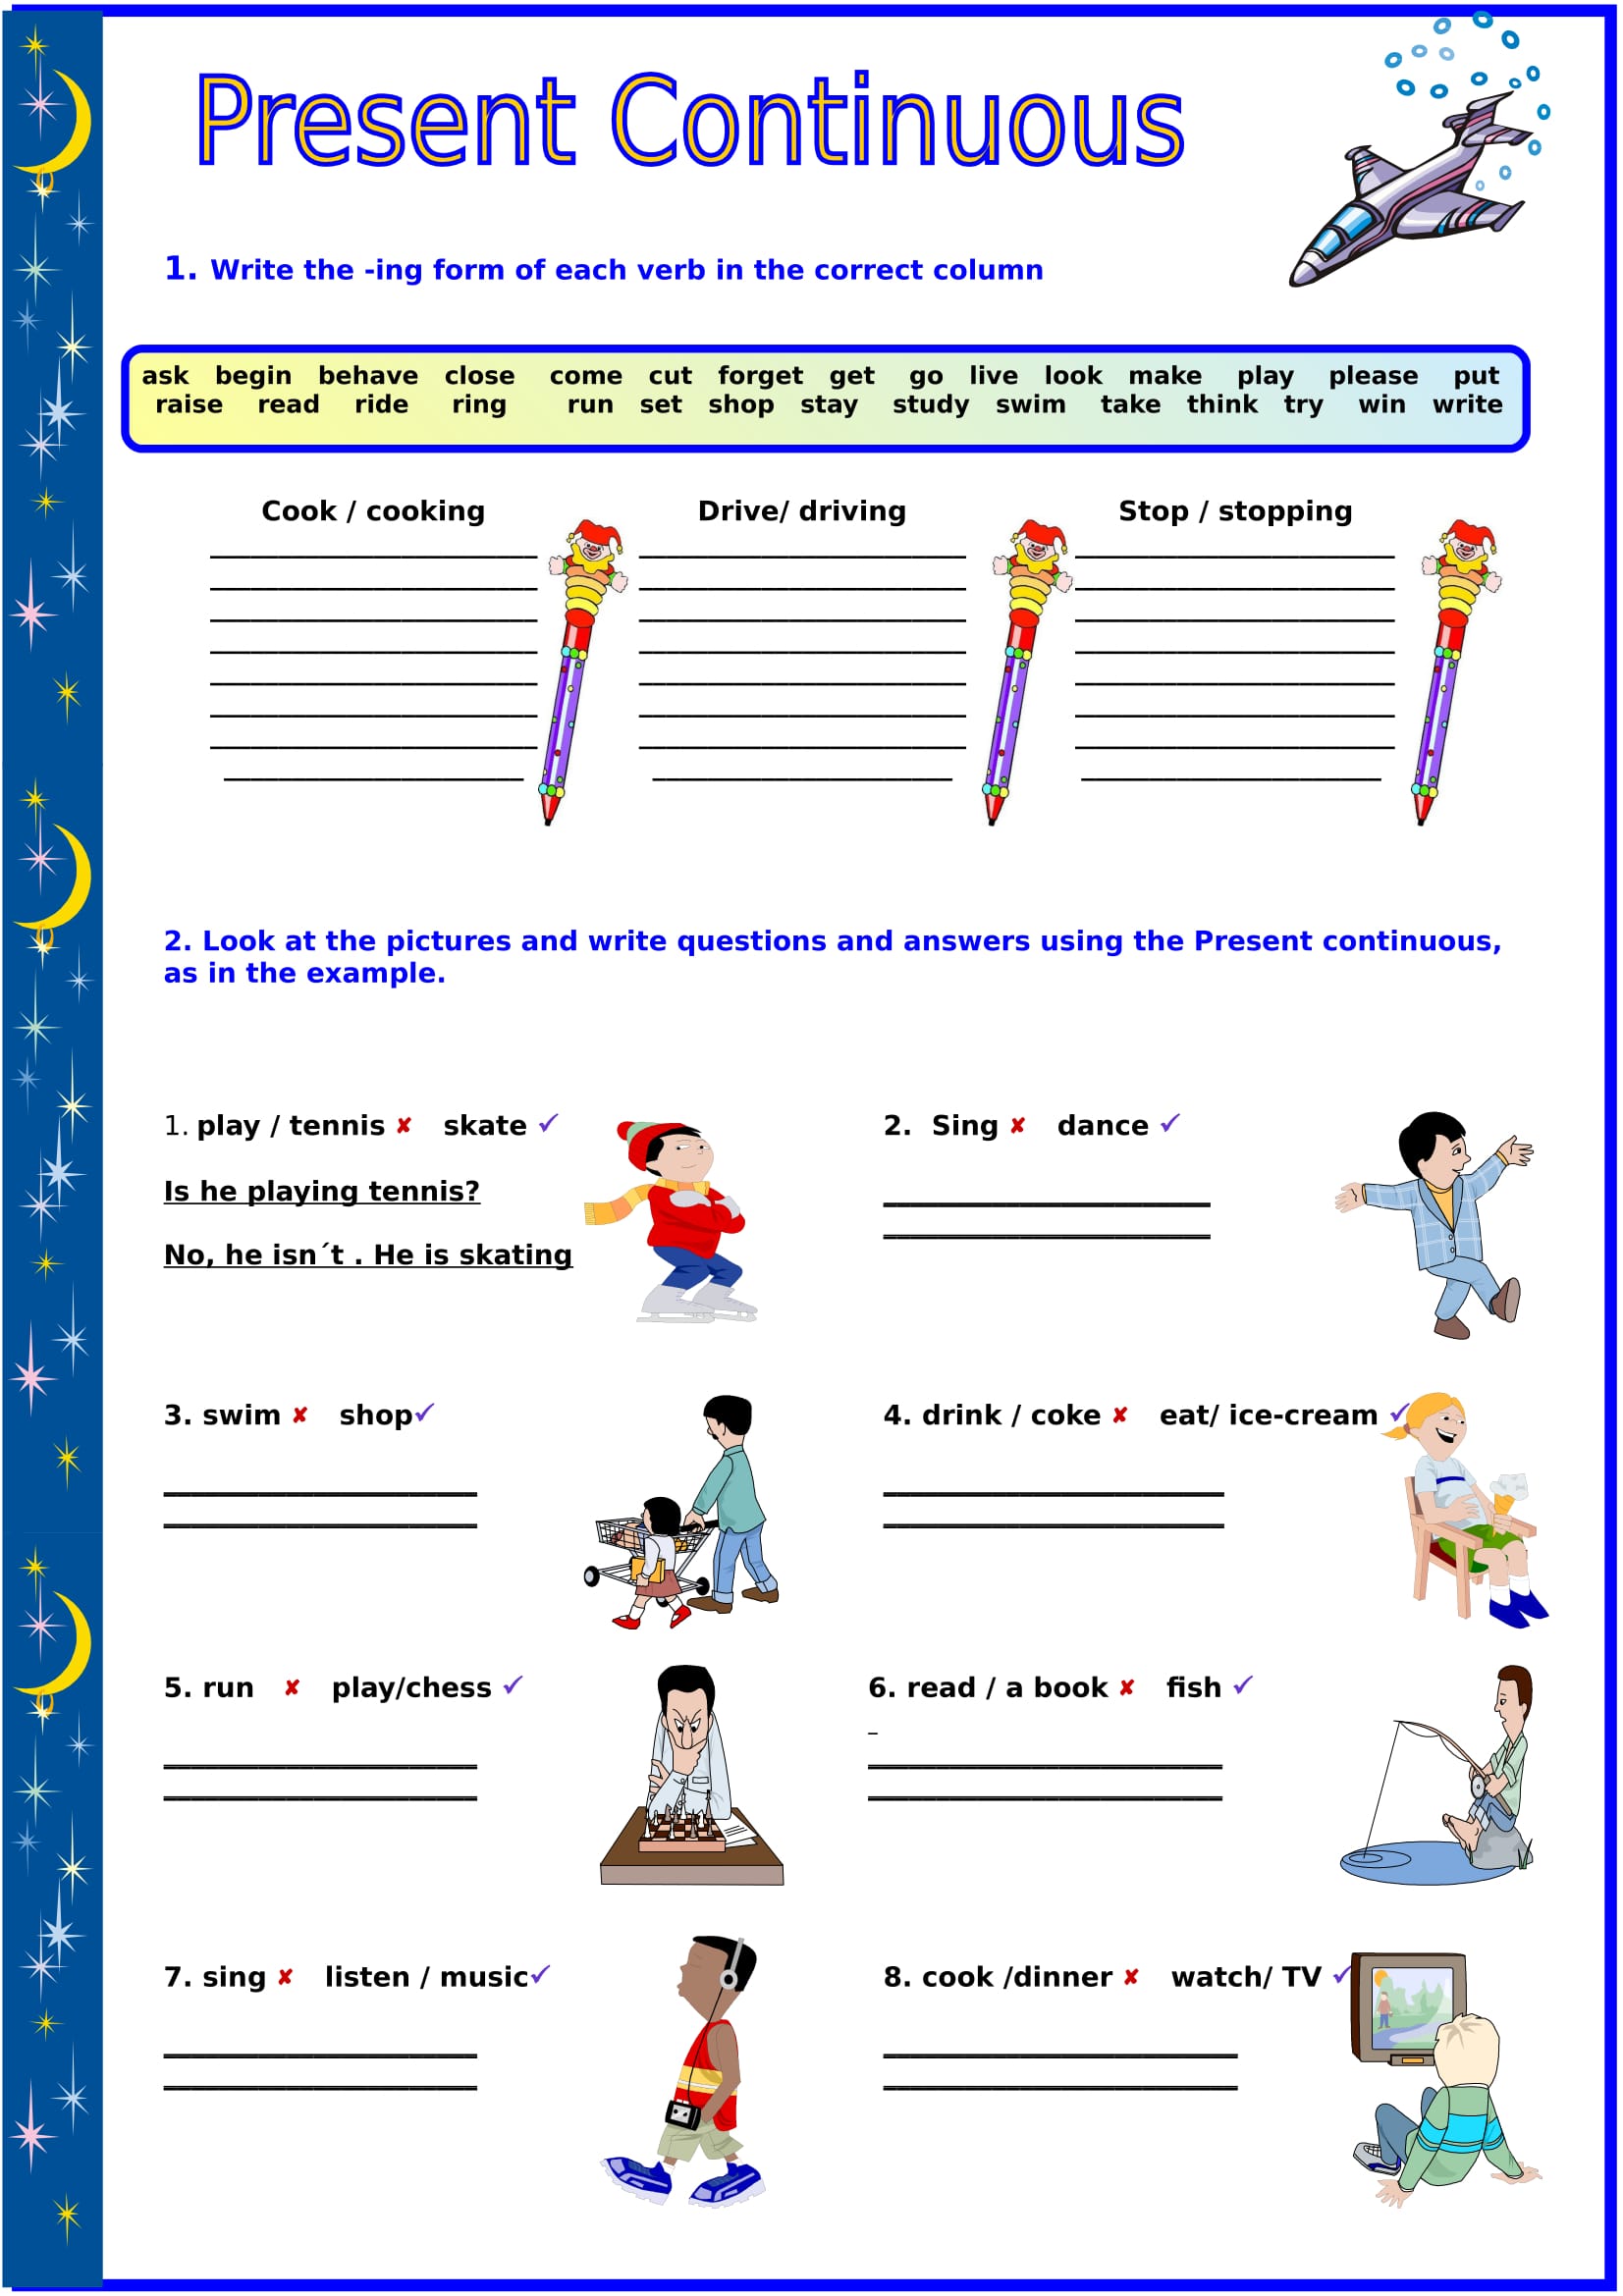 Make questions present continuous. Презент континиус Worksheets. Present Continuous упражнения для детей. Рабочий лист present Continuous. Present Continuous Worksheets.